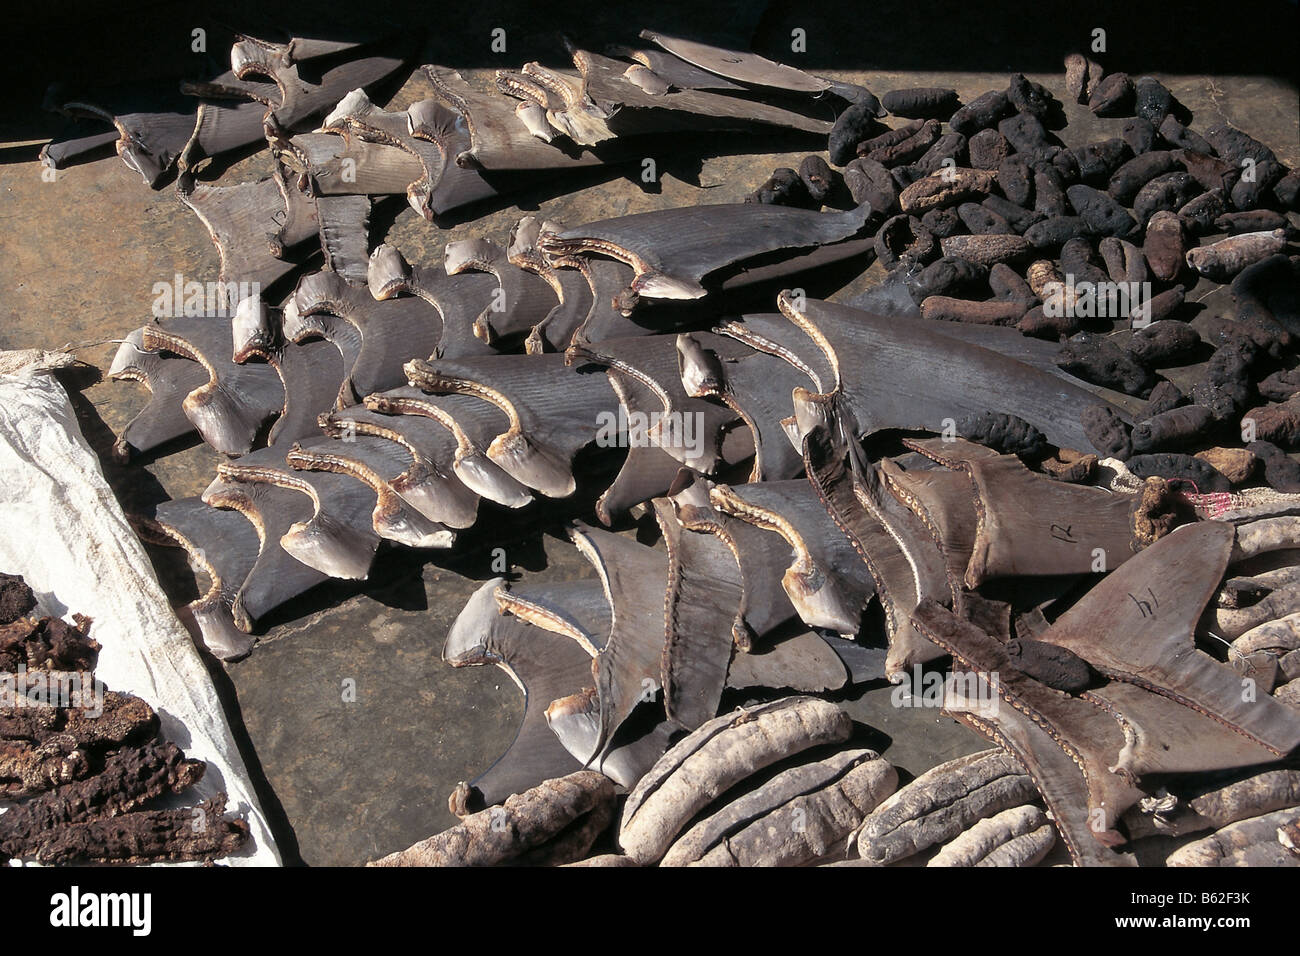 Las aletas de los tiburones y los pepinos de mar de secado al sol Foto de stock